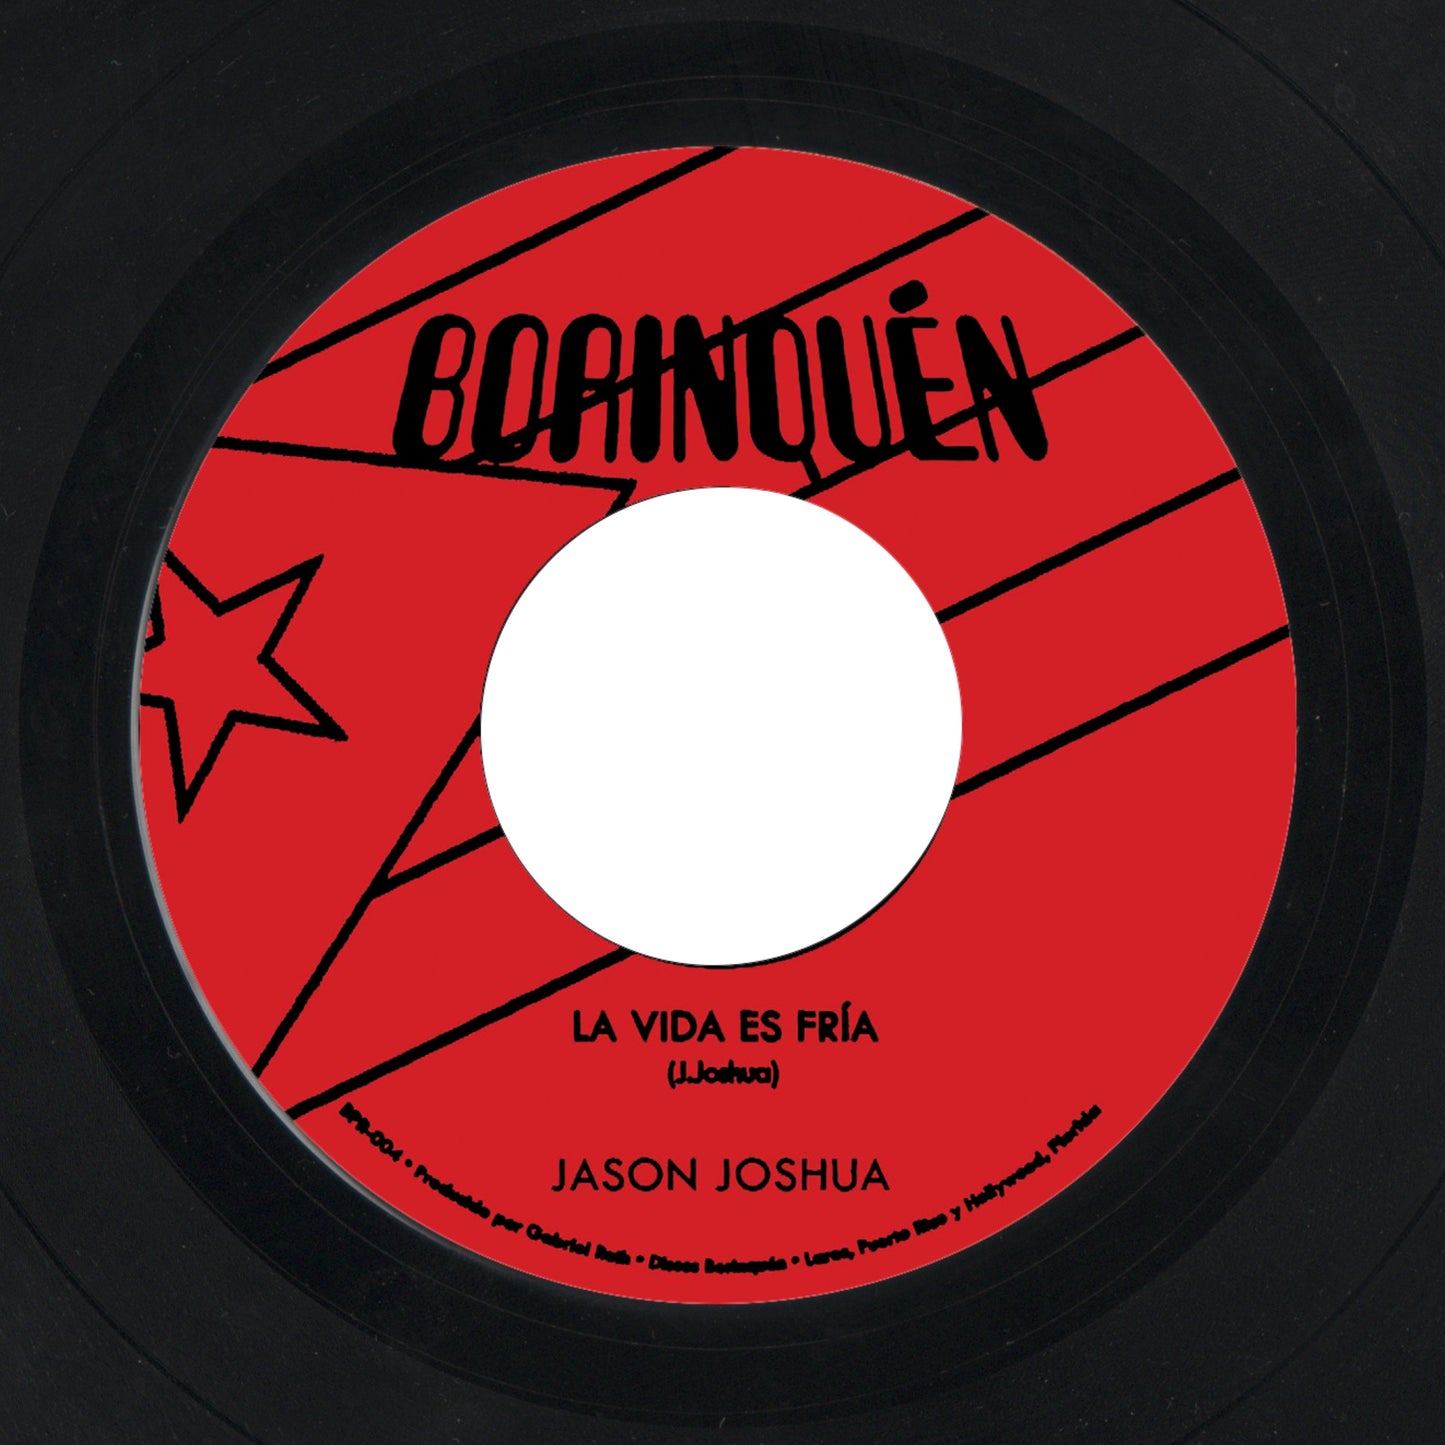 Jason Joshua "La Vida Es Fria / Se Acabó" Single